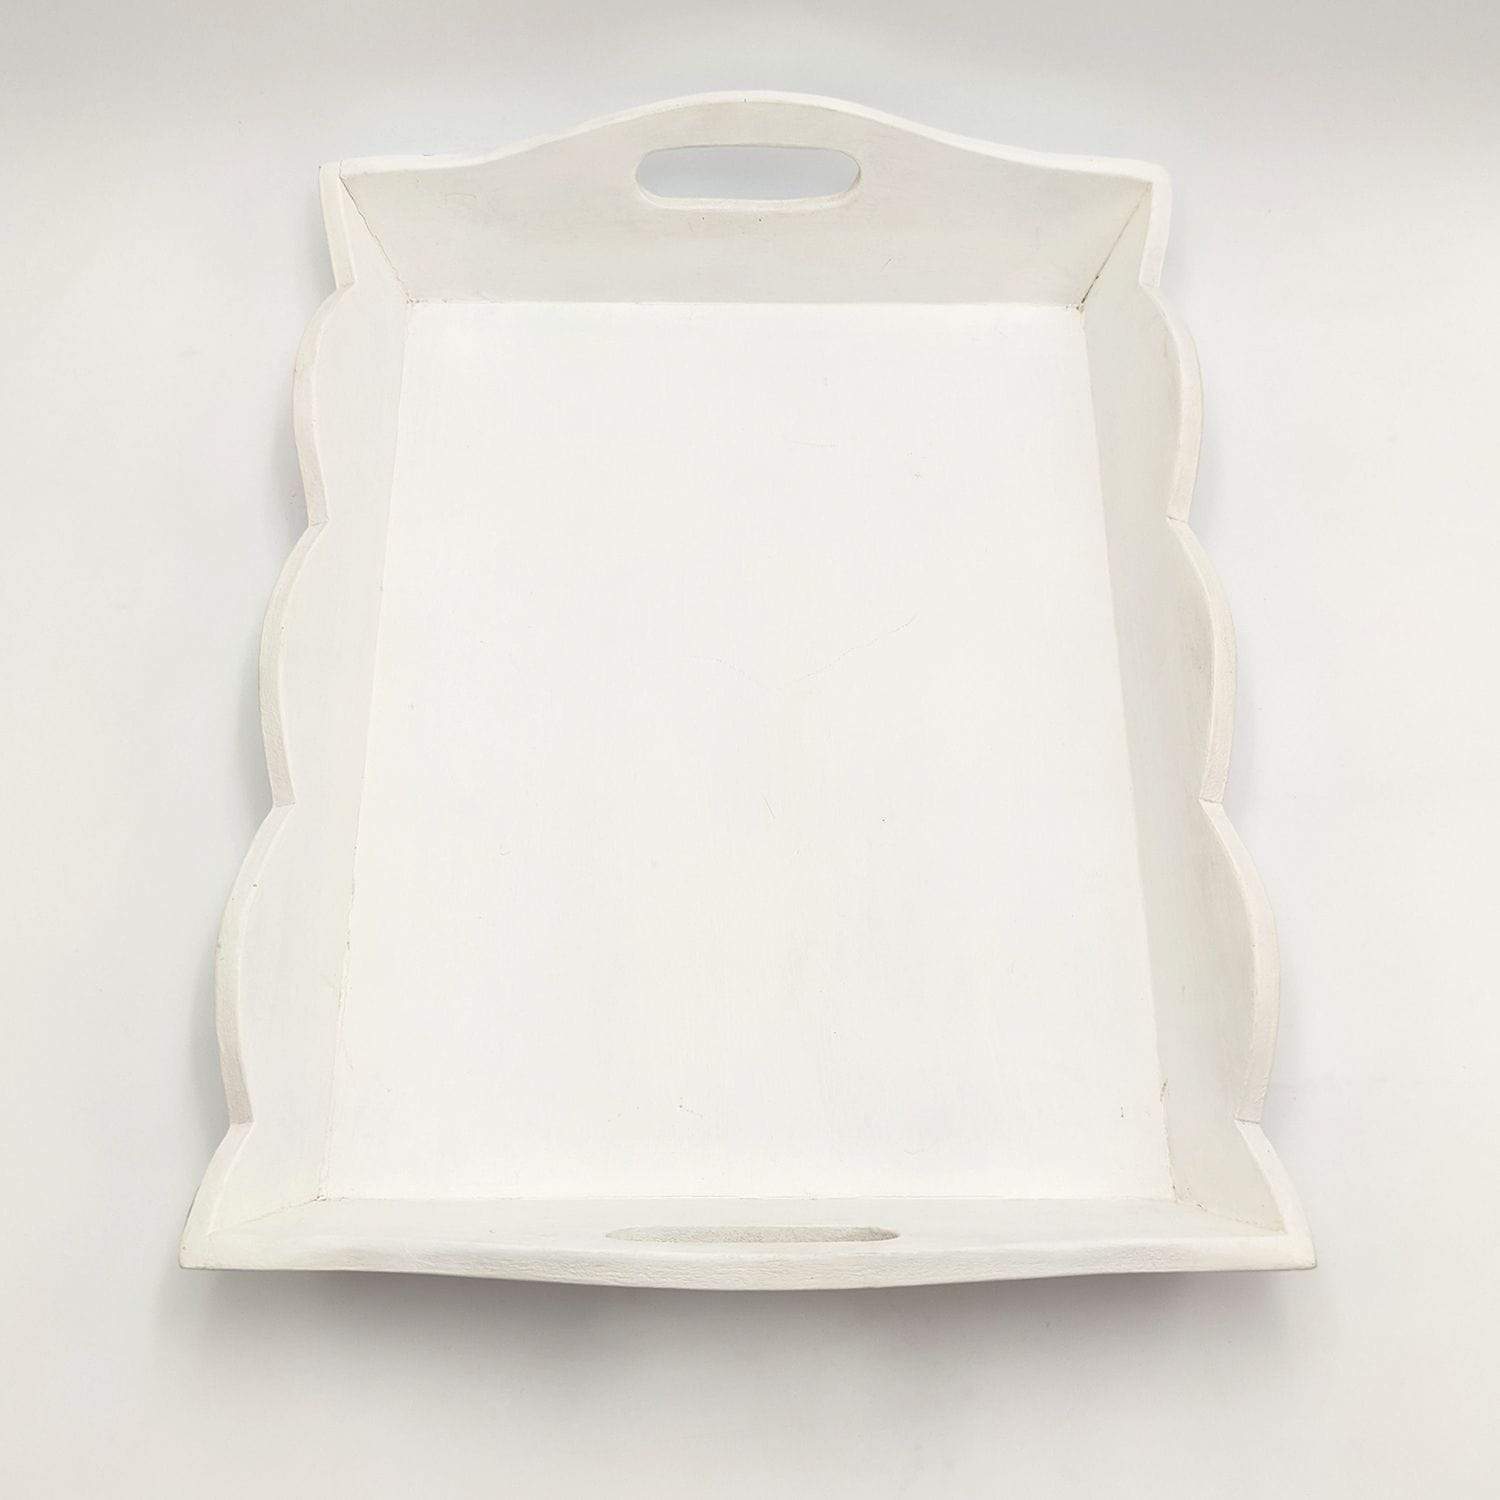 Vassoio Decorativo in Legno Bianco 40x14 cm - Da Moreno